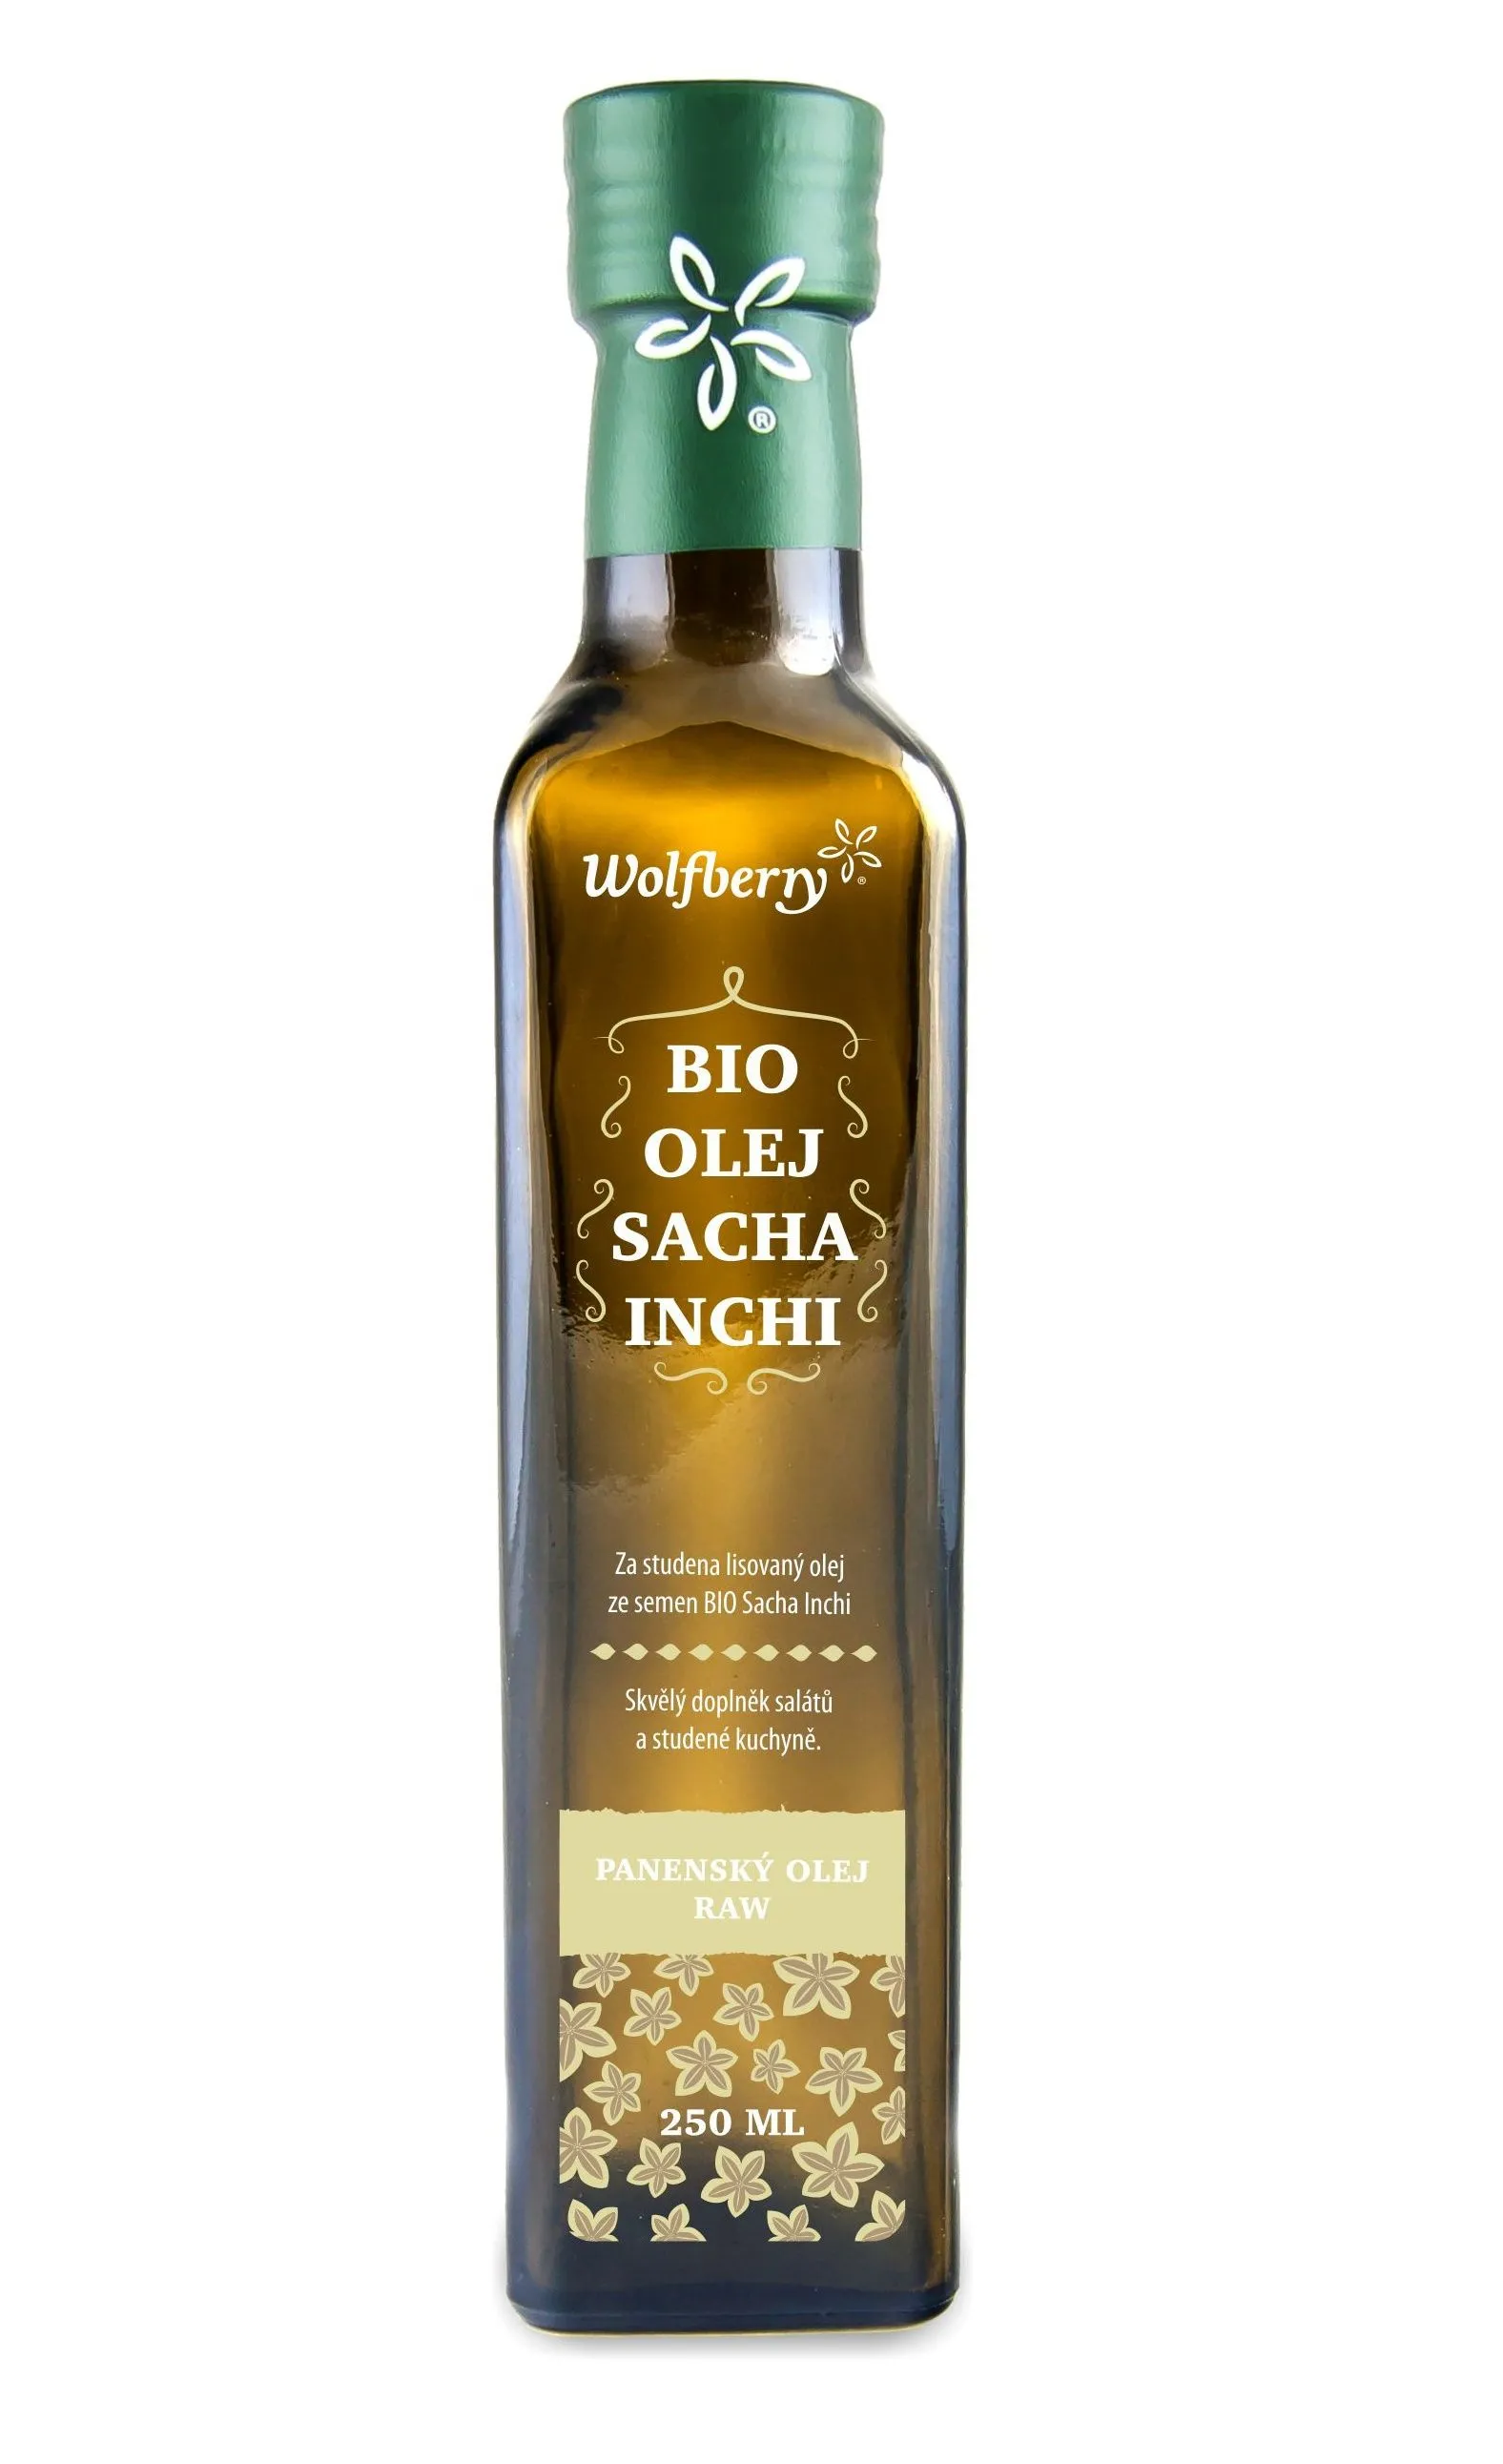 Wolfberry Sacha Inchi olej BIO 250 ml